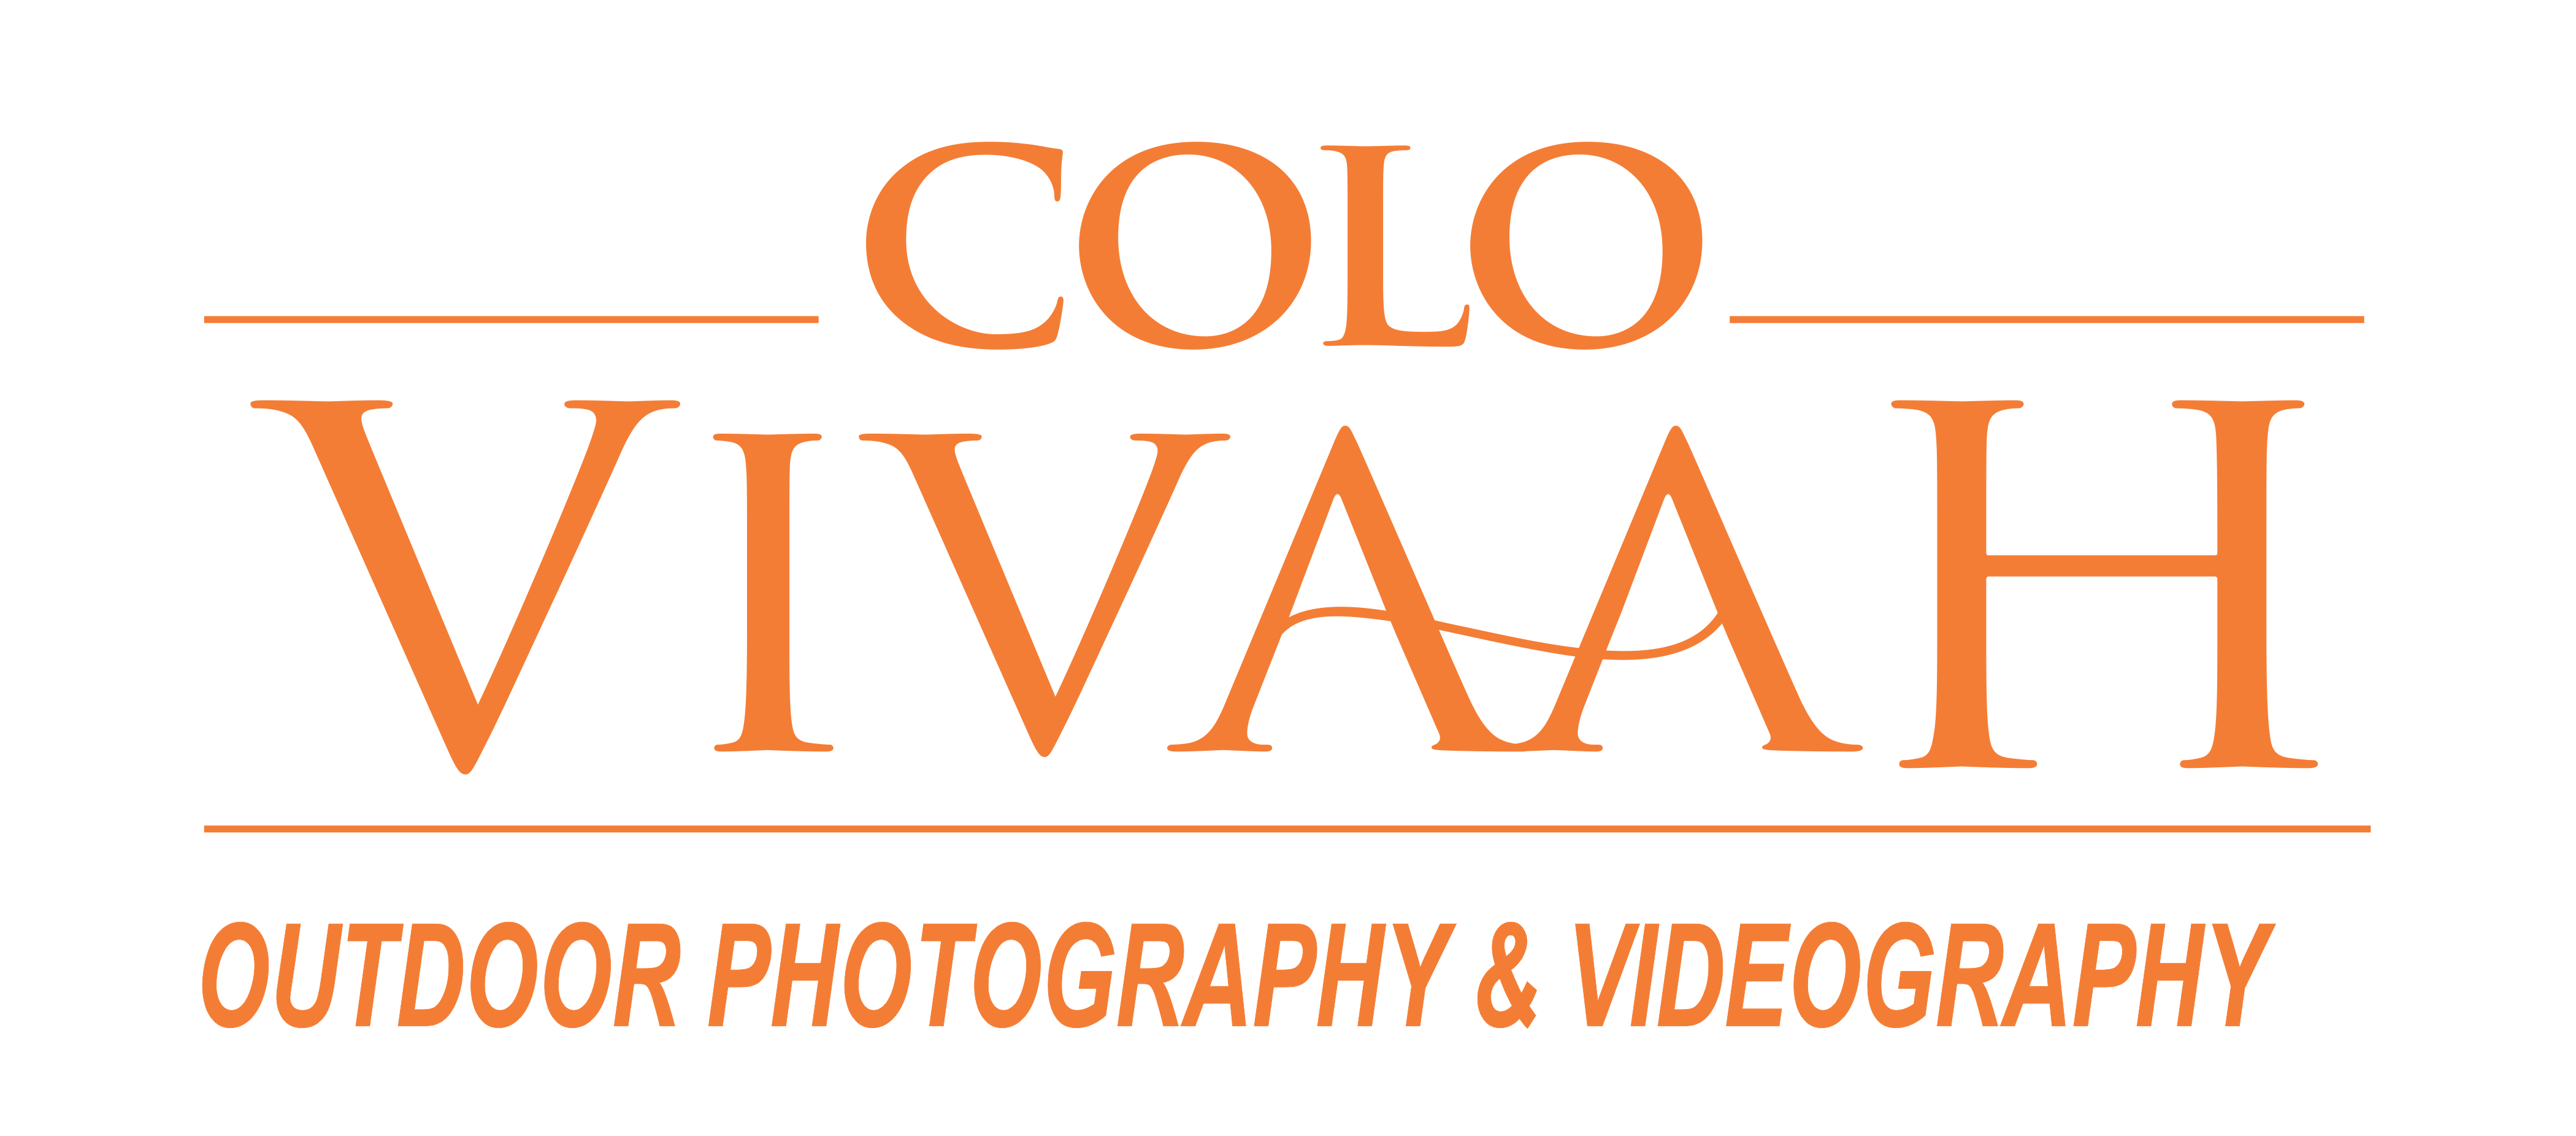 Colo Vivaah